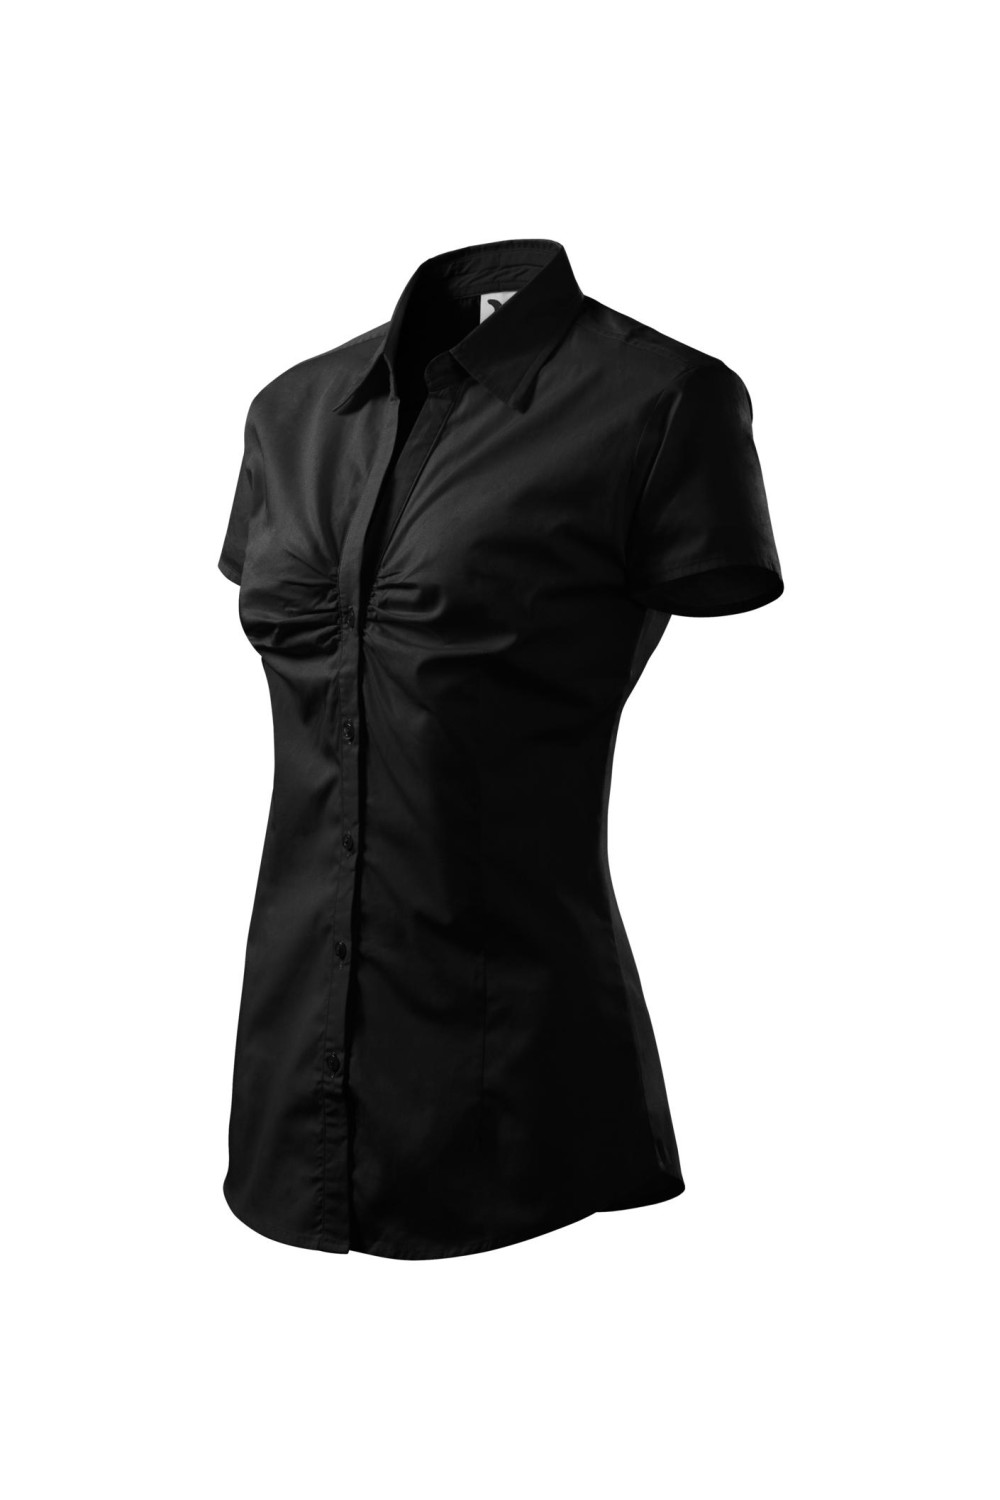 Koszula damska krótki rękaw 100% bawełna CHIC 214 koszule czarny